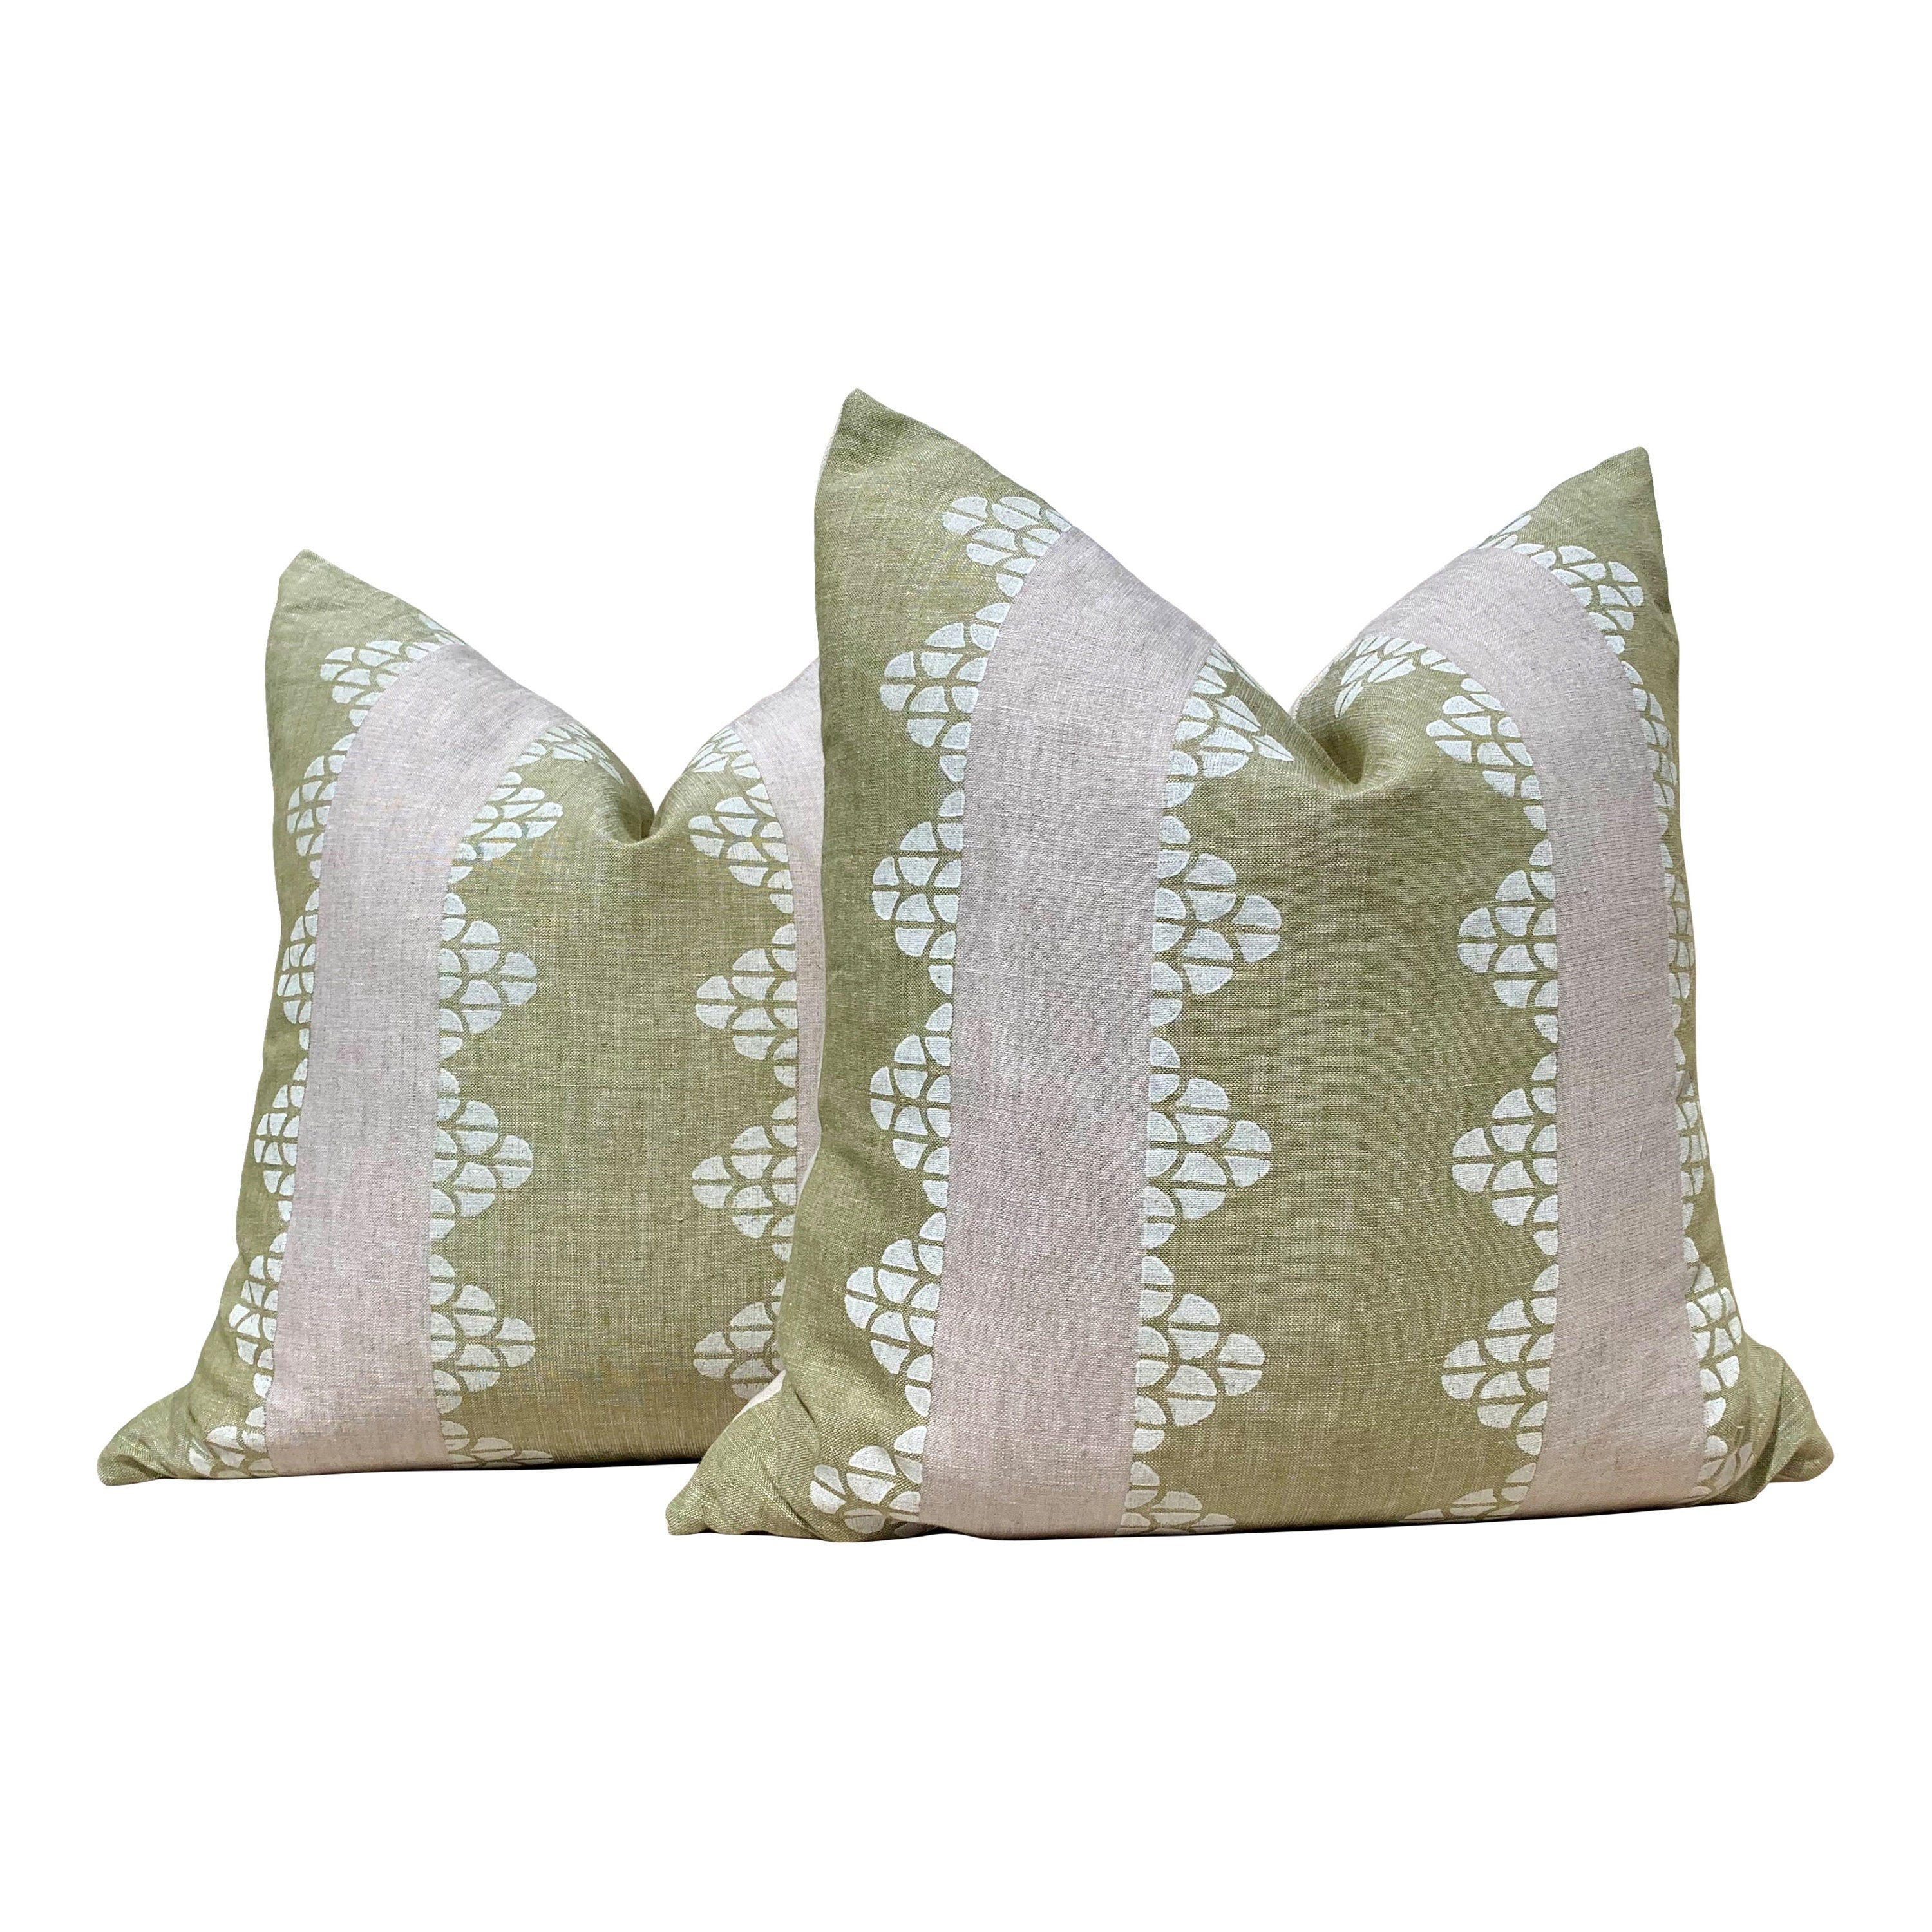 Thibaut Dhara Stripe Pillow Green. Lumbar Striped Green Pillow Cover, Euro Sham Pillow Cover, Stripe Decorative Pillow, Bedding Pillows